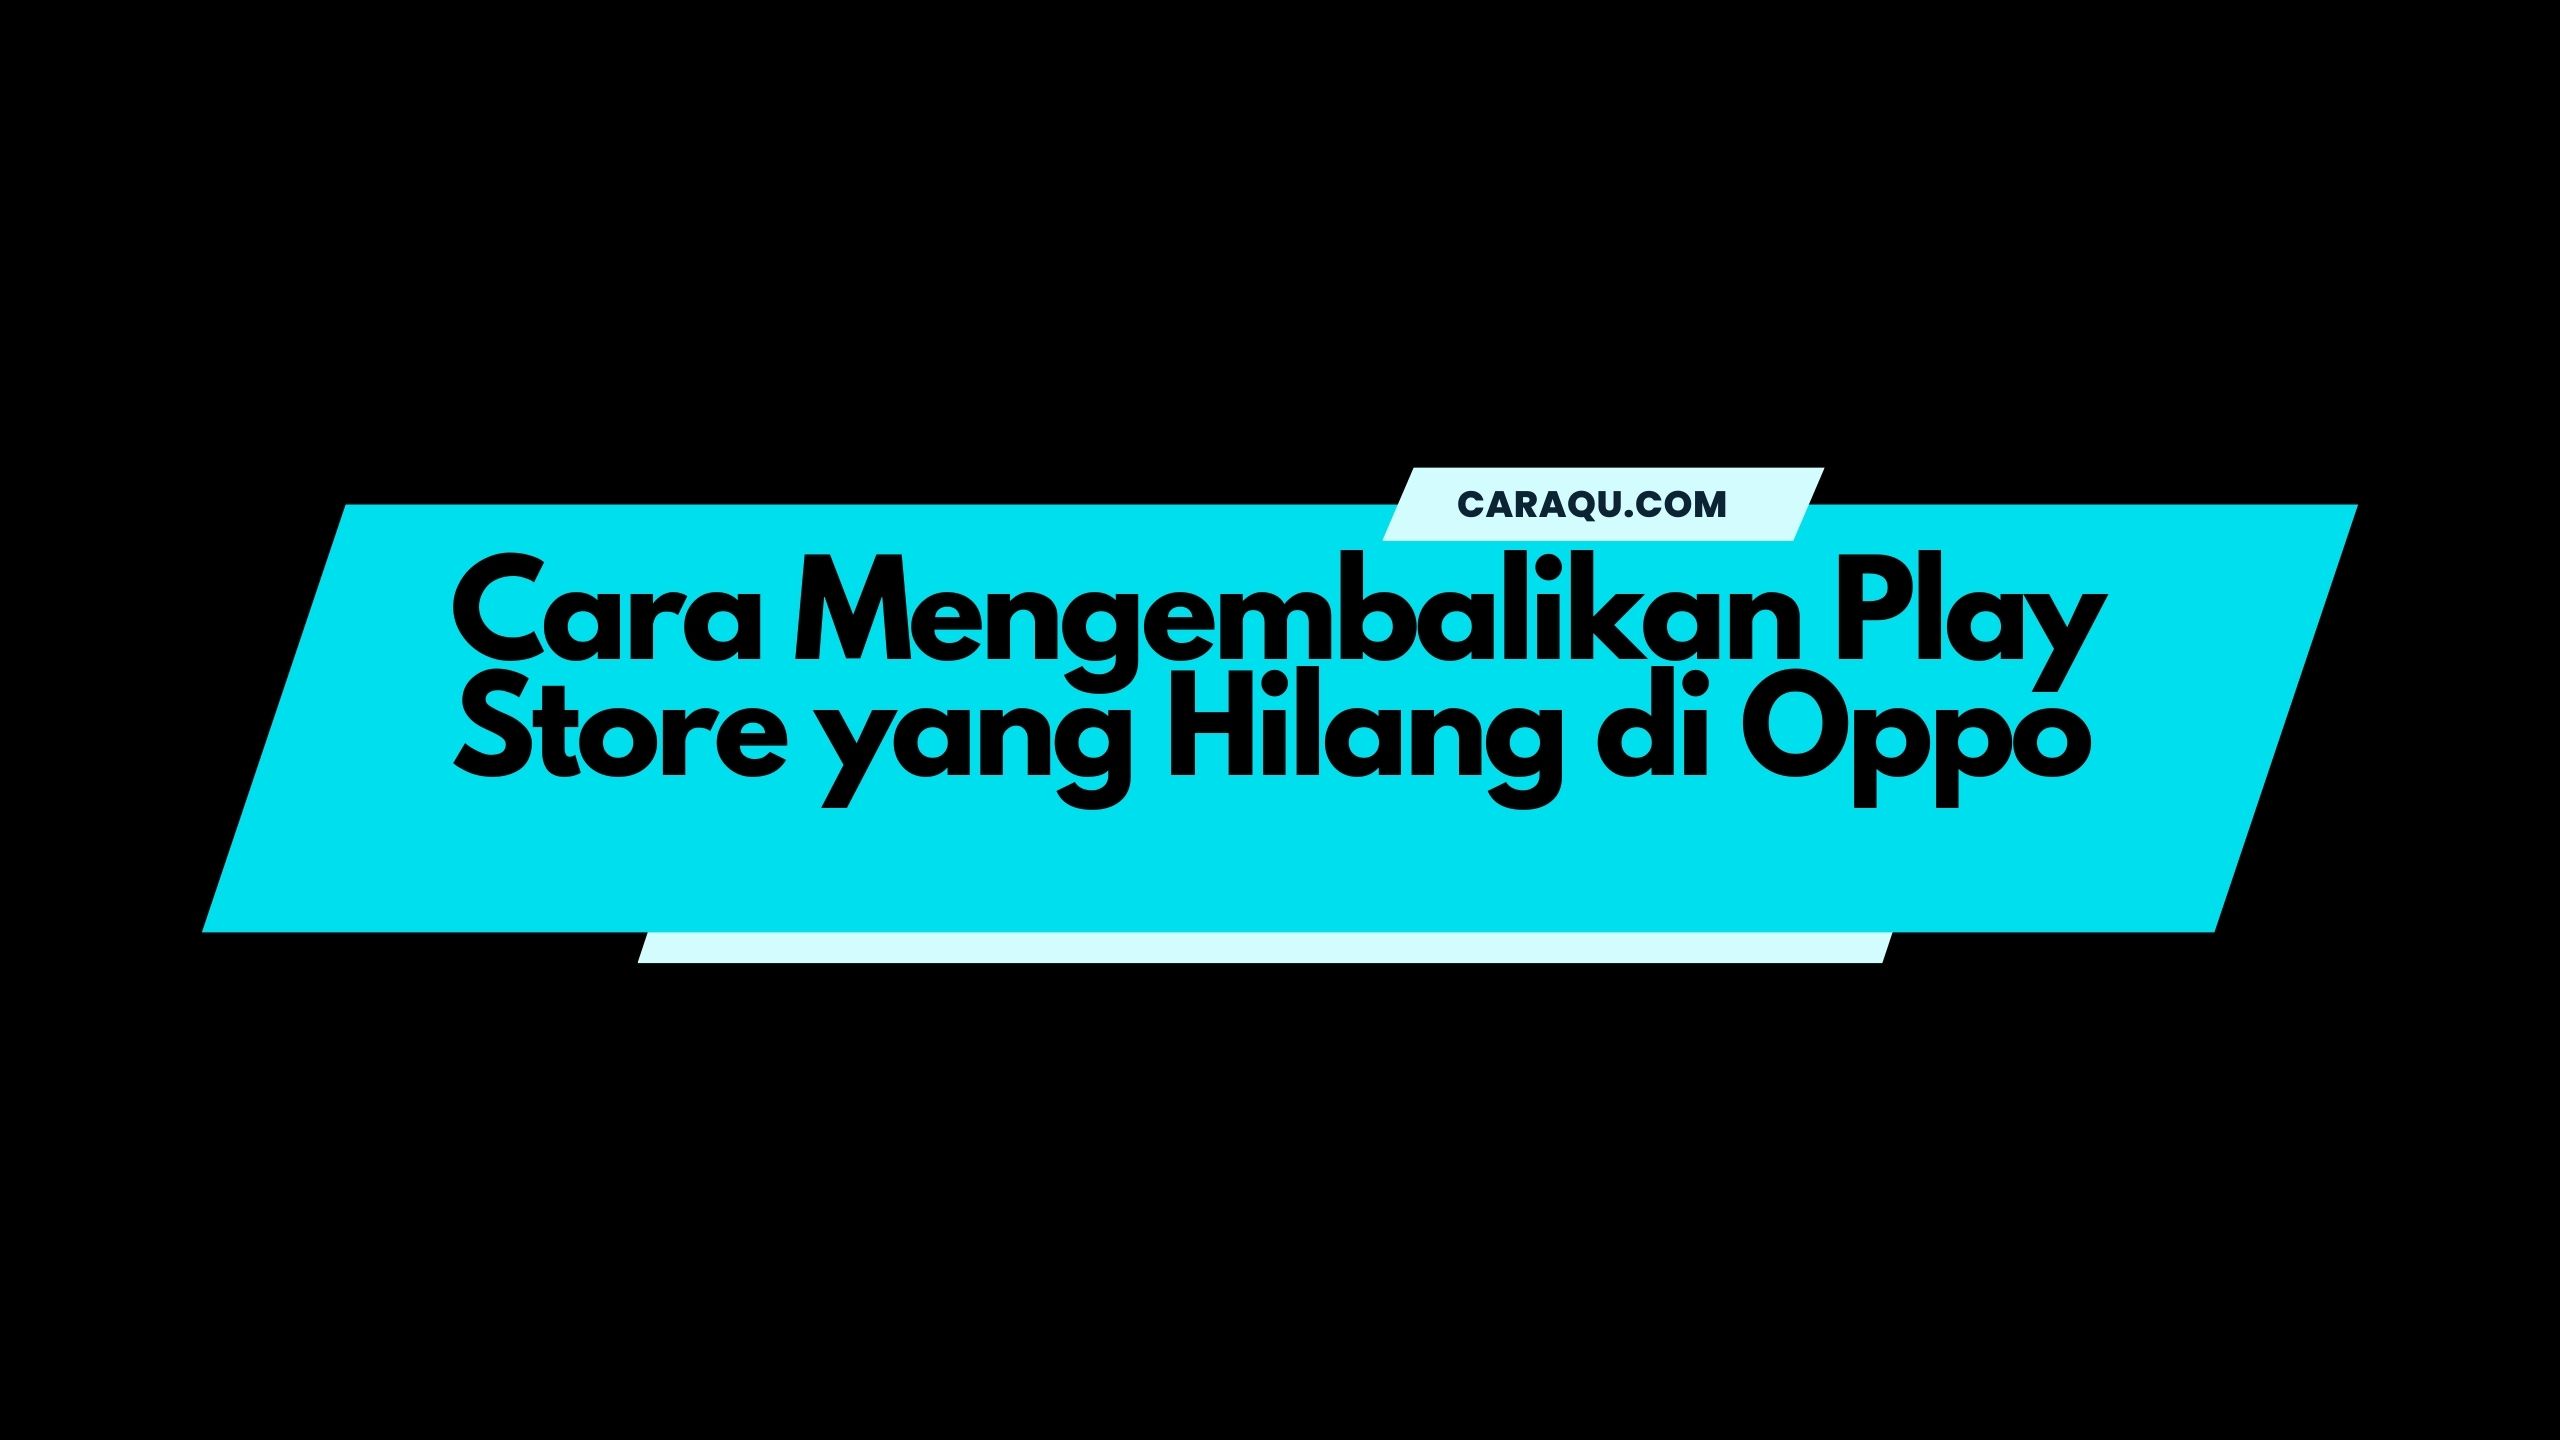 Cara Mengembalikan Play Store yang Hilang di Oppo